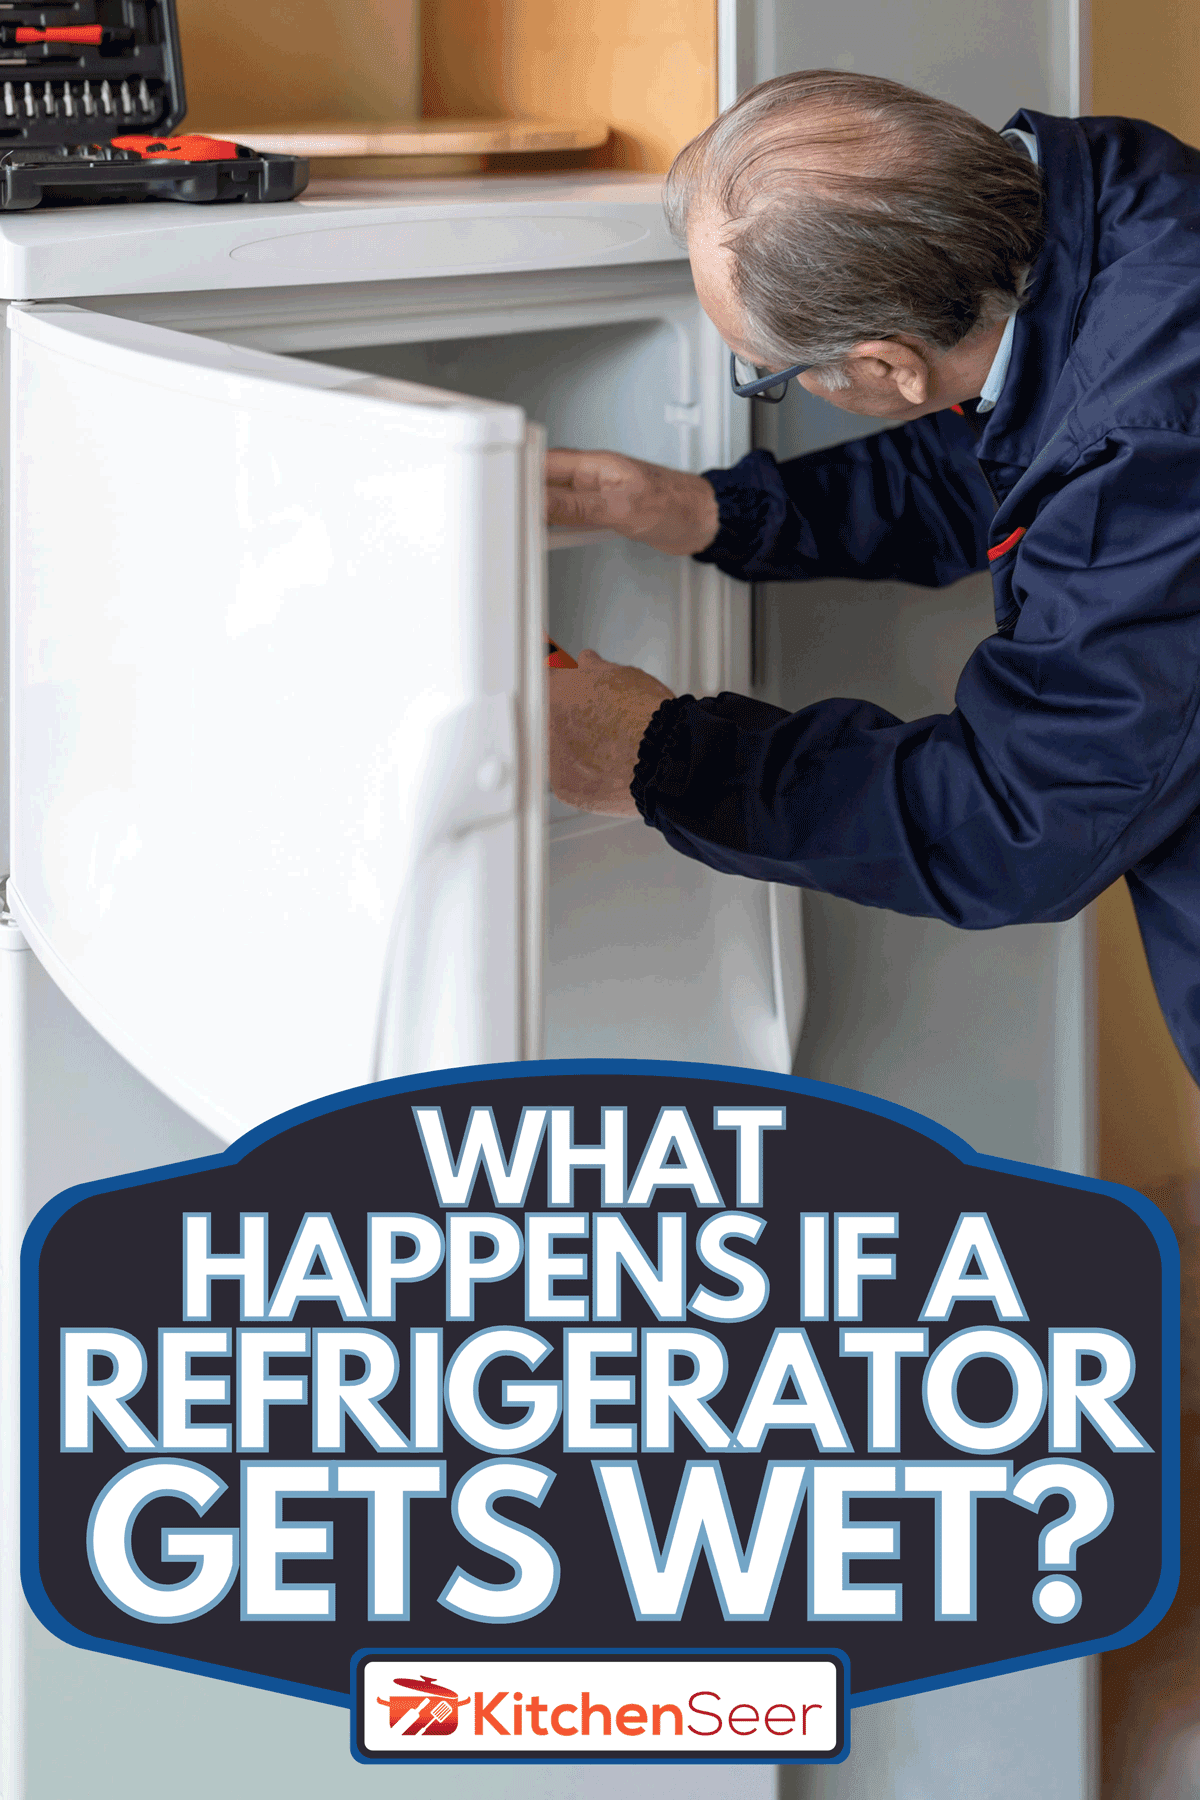 维修工程师工作在厨房里和修理冰箱,如果冰箱变得湿润,会发生什么?bd手机下载